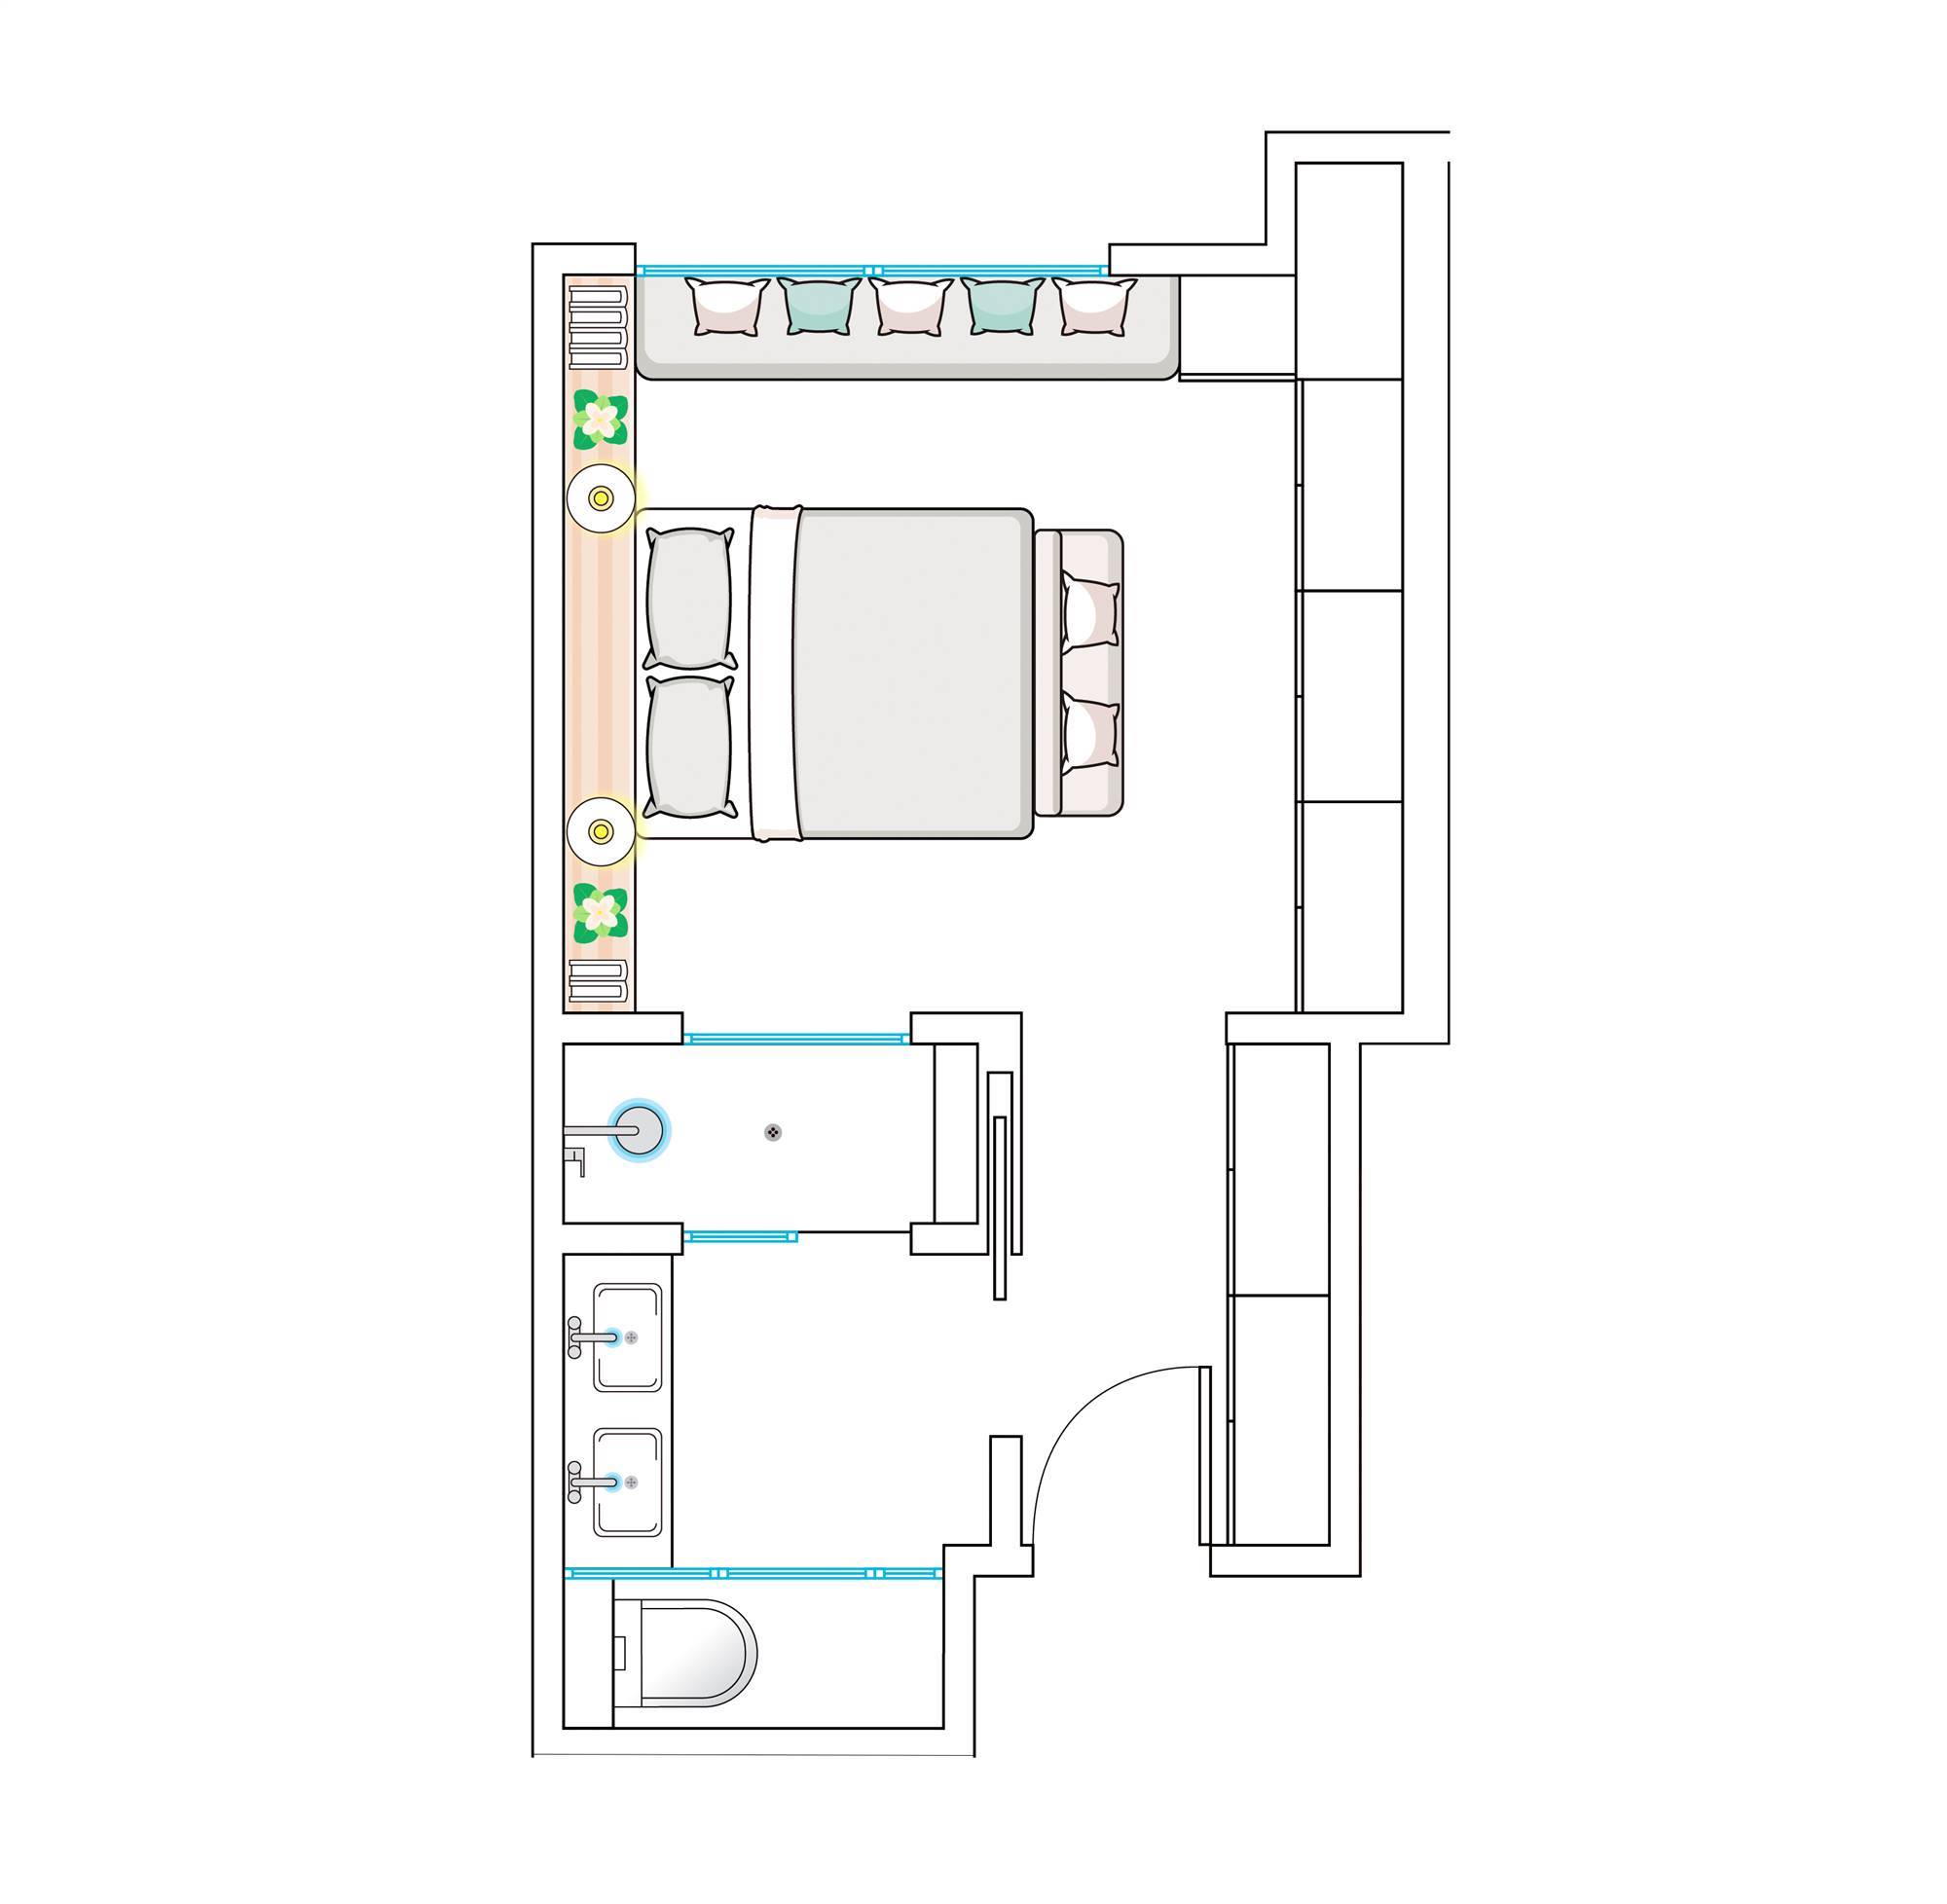 Plano de dormitorio con baño en suite separados por una mampara fija.